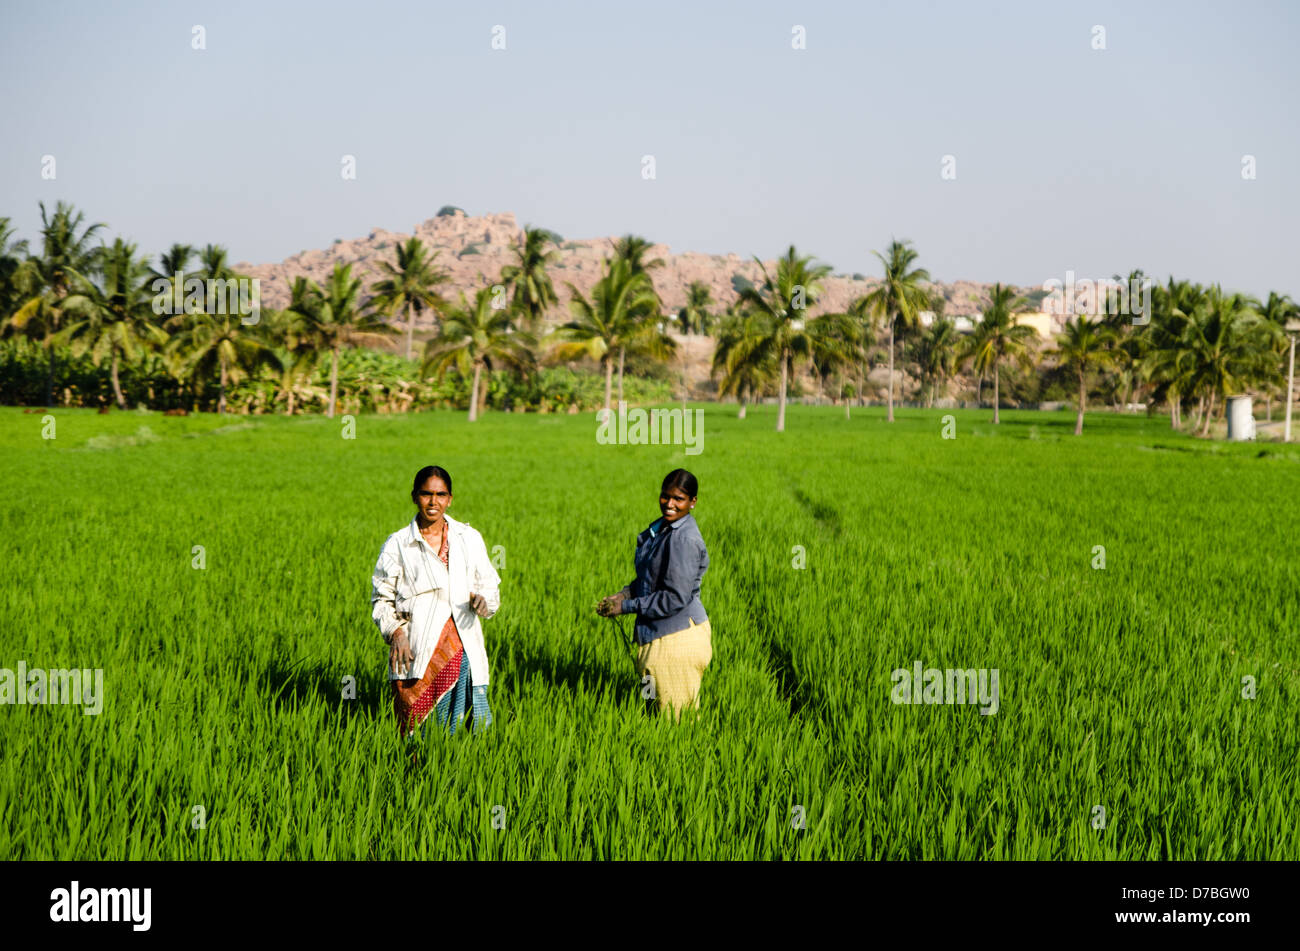 KARNATAKA, INDIA - 3 MARCH: Women work in rice paddy on 3 March 2013 in Karnataka. India produces 20% of the worlds rice. Stock Photo